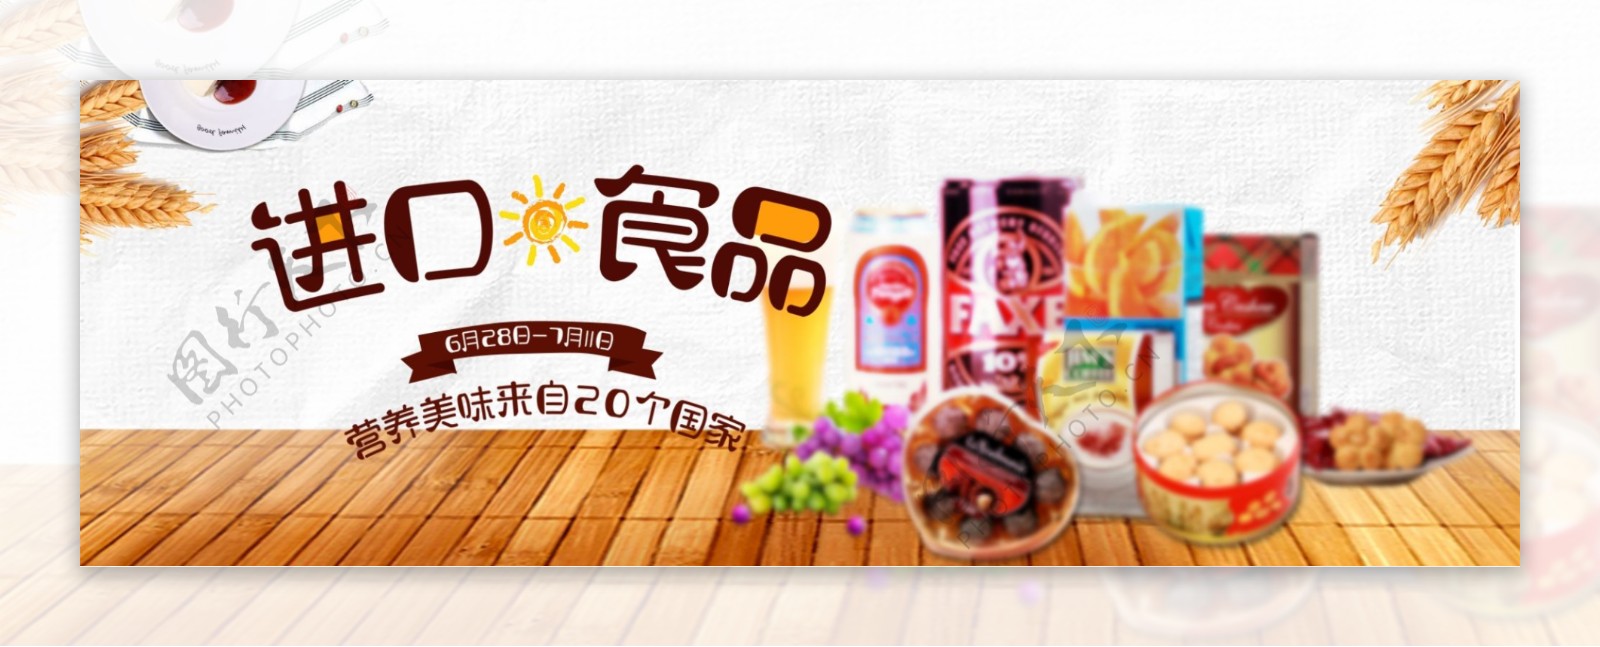 清新木地板零食进口食品淘宝banner海报